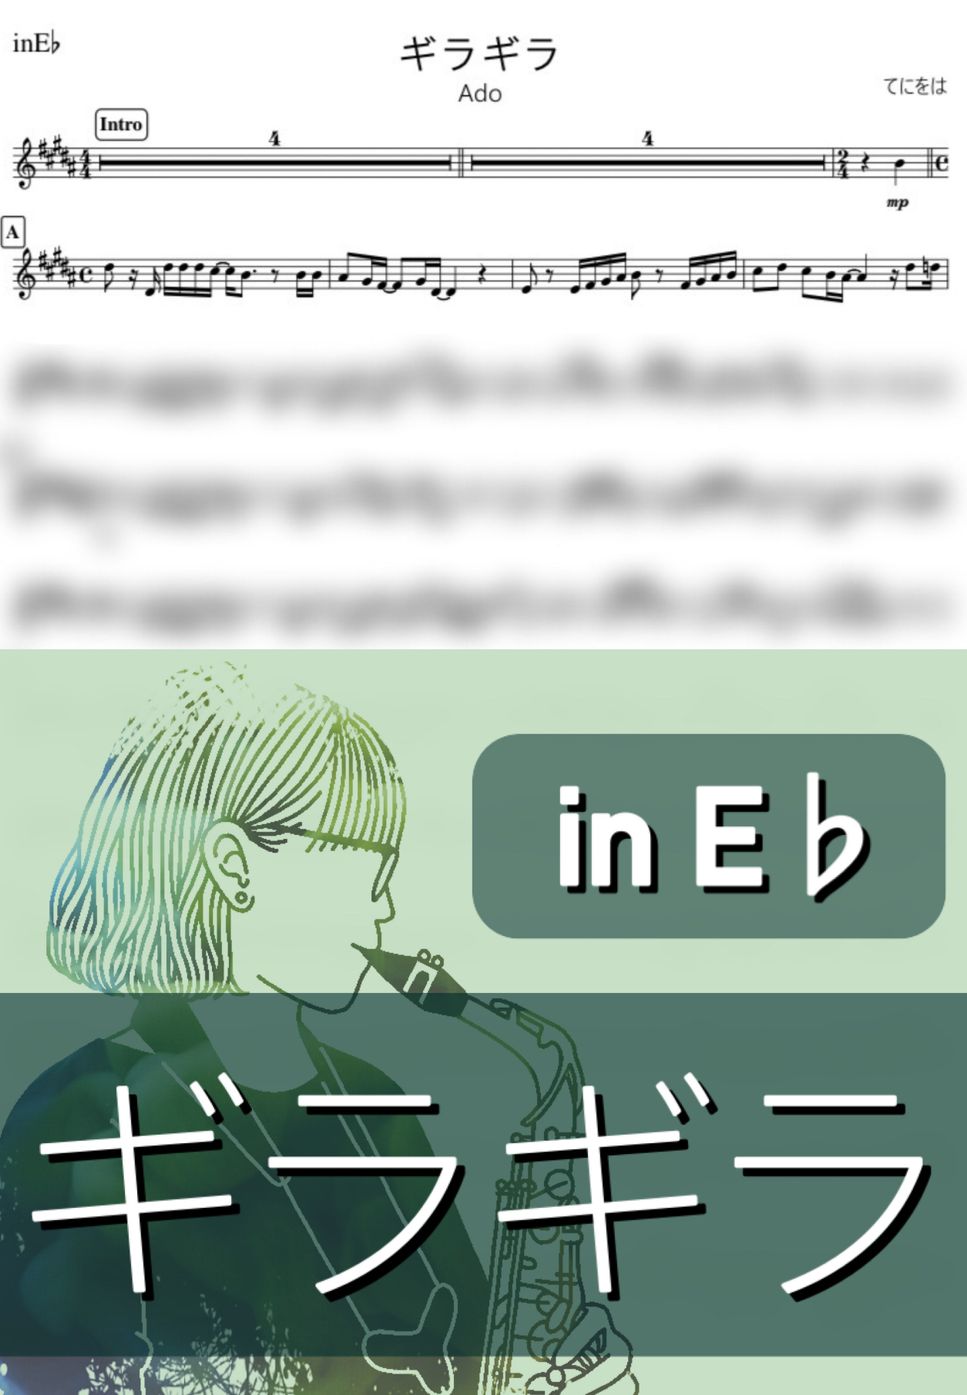 Ado - ギラギラ (E♭) by kanamusic